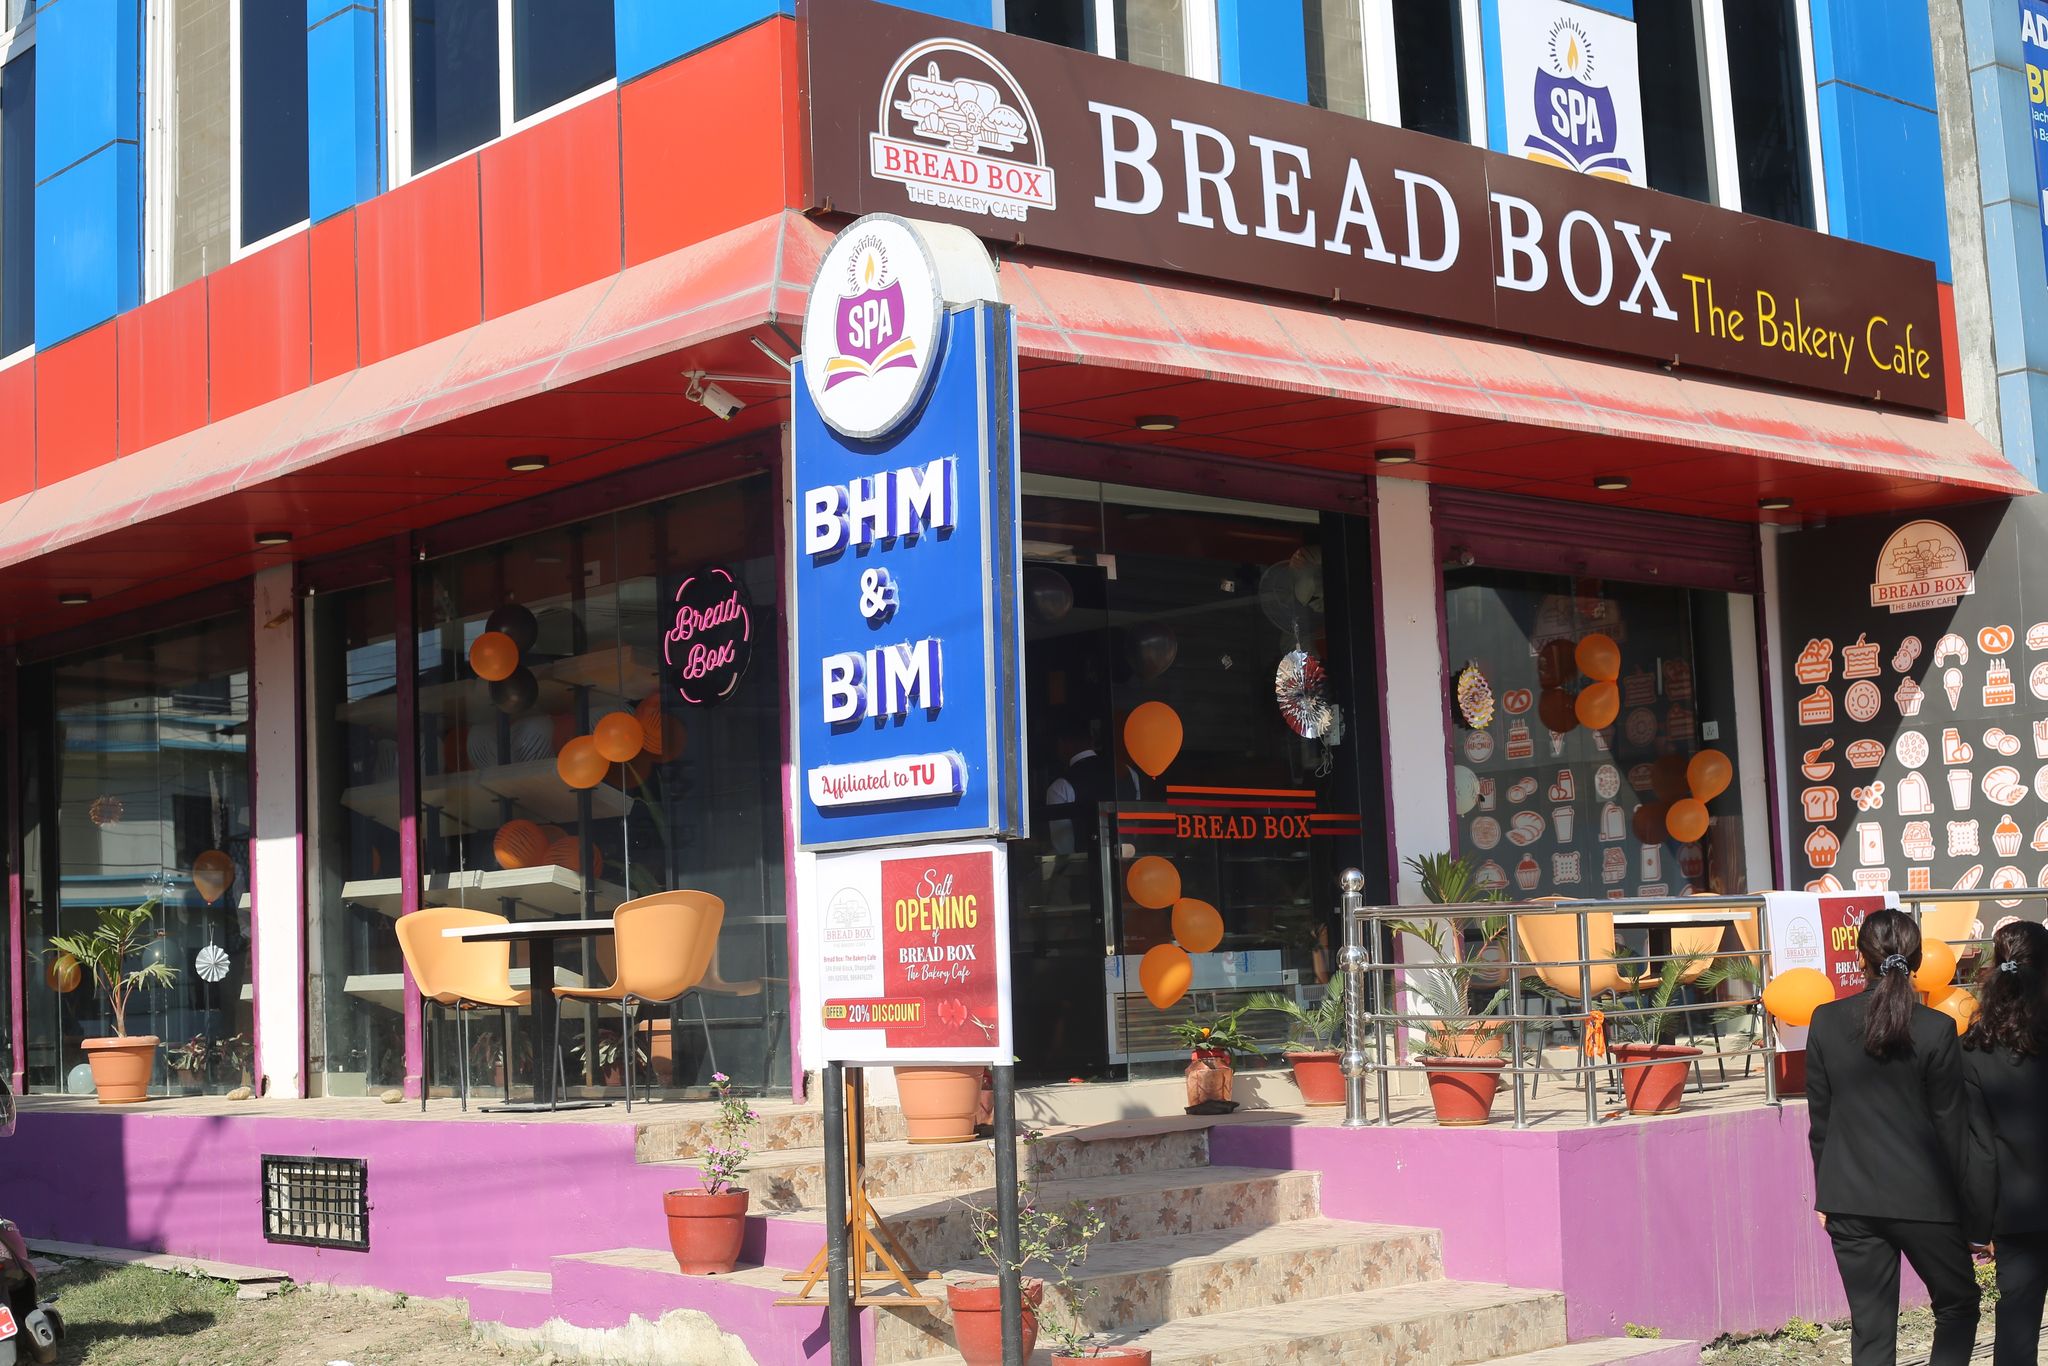 धनगढीमा ब्रेड बक्स बेकरी क्याफे सञ्चालनमा